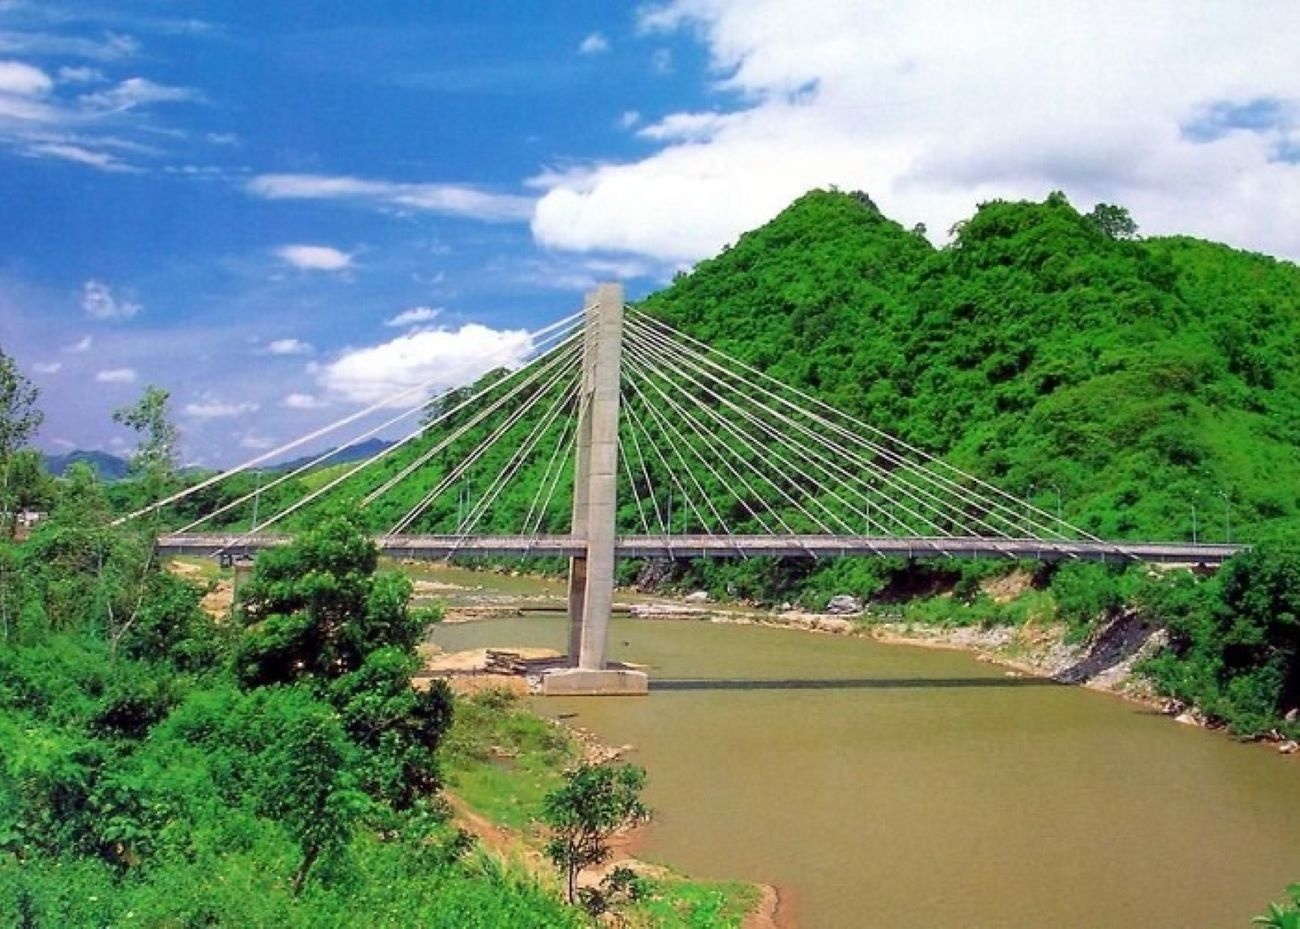 Cầu treo Đakrông một biểu tượng của miền tây Quảng Trị, giúp đồng bào DTTS nhiều xã phía nam huyện kết nối với trung tâm huyện lỵ Đakrông